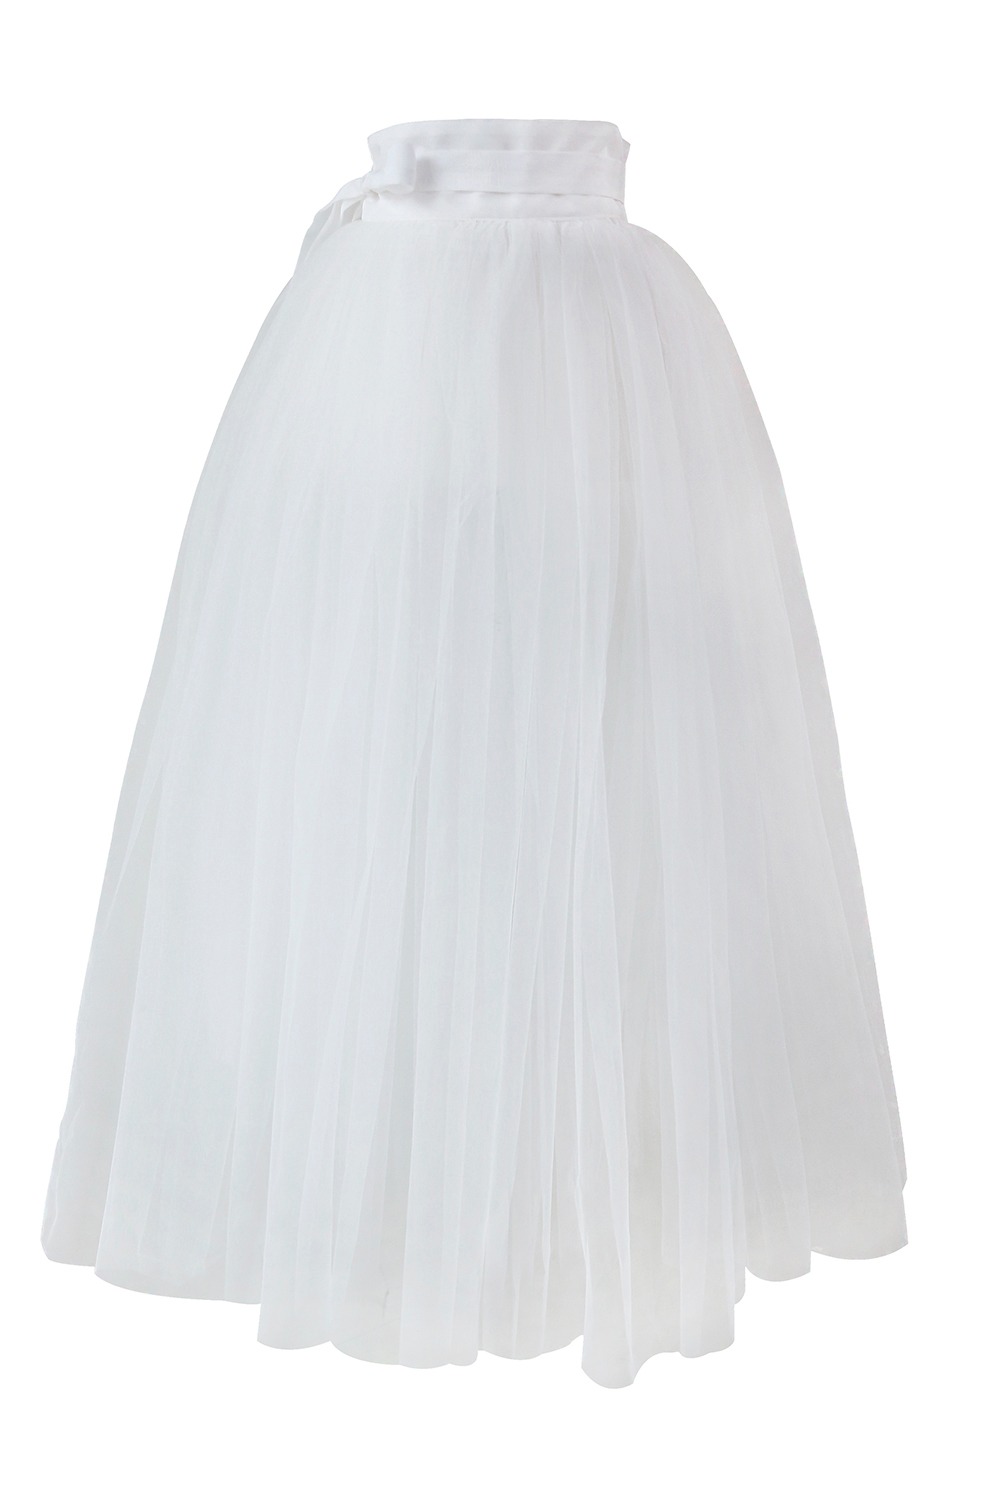 Tulle Skirt [White]